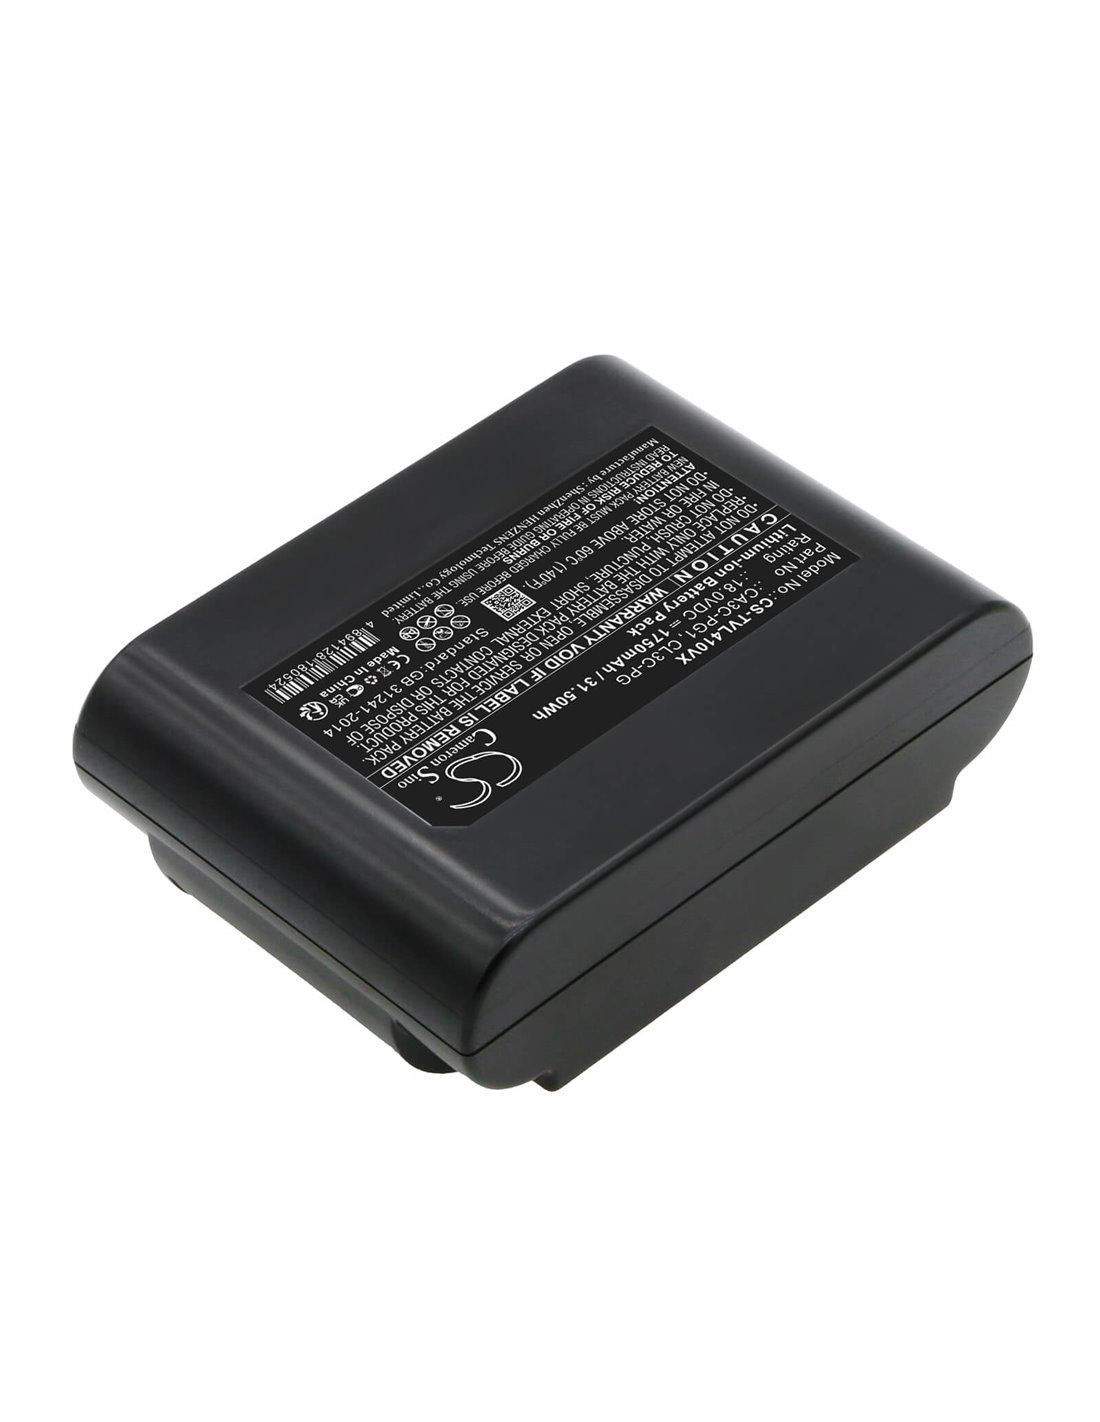 18.0V, Li-ion, 1750mAh, Battery fits Toshiba Cl410ac, Vc-cl1200, Vc-cl1300, 31.50Wh